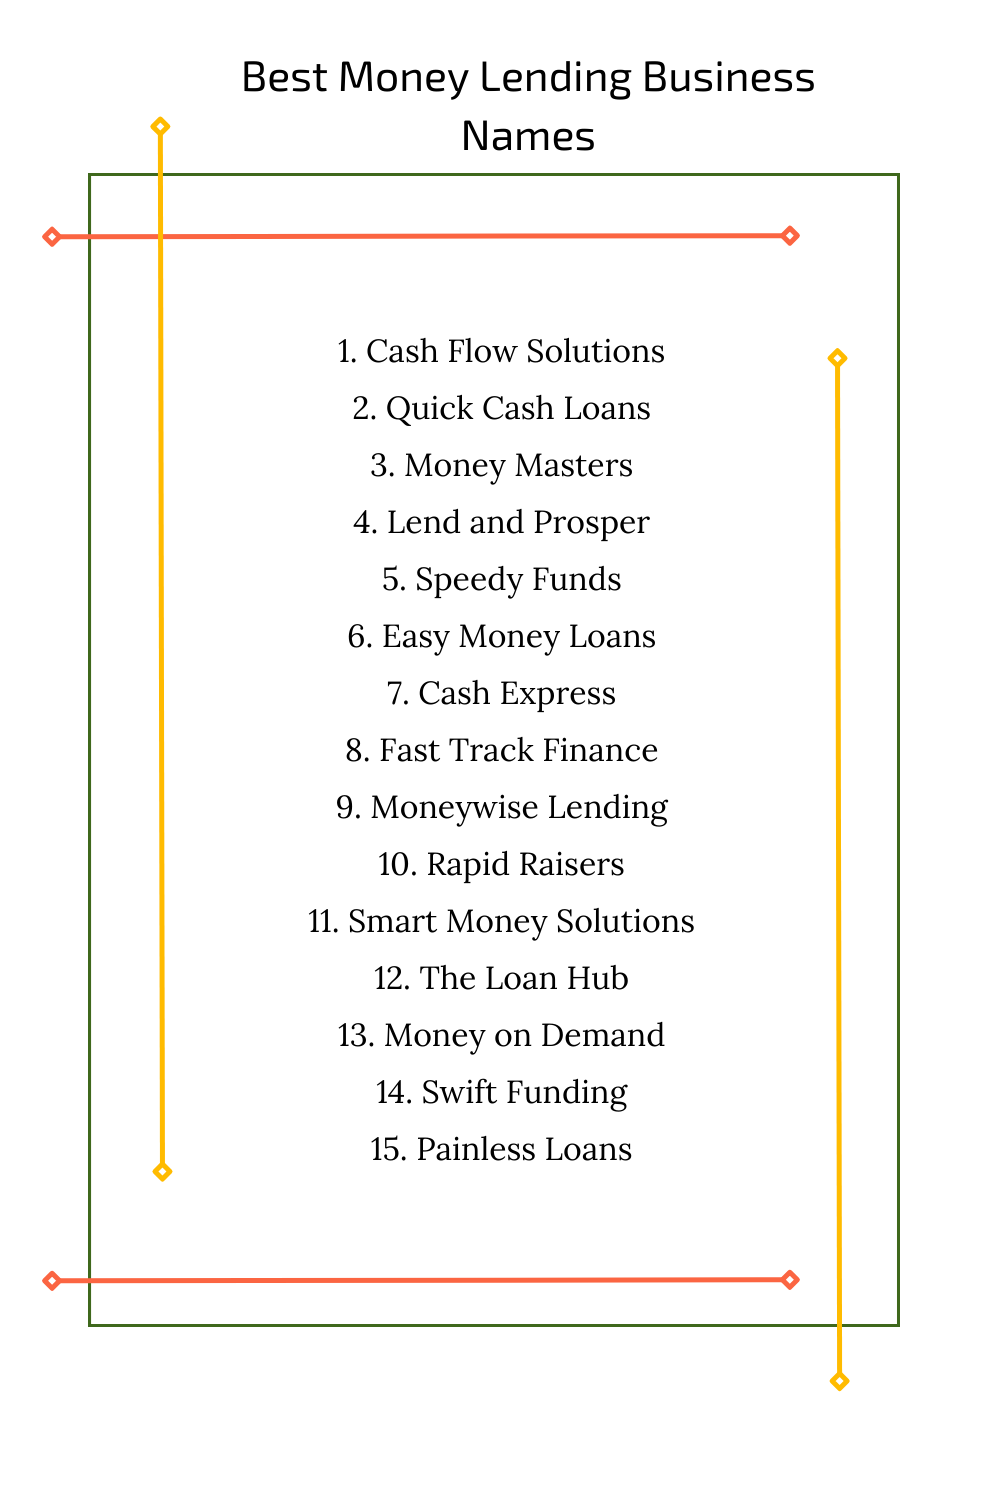 Best Money Lending Business Names